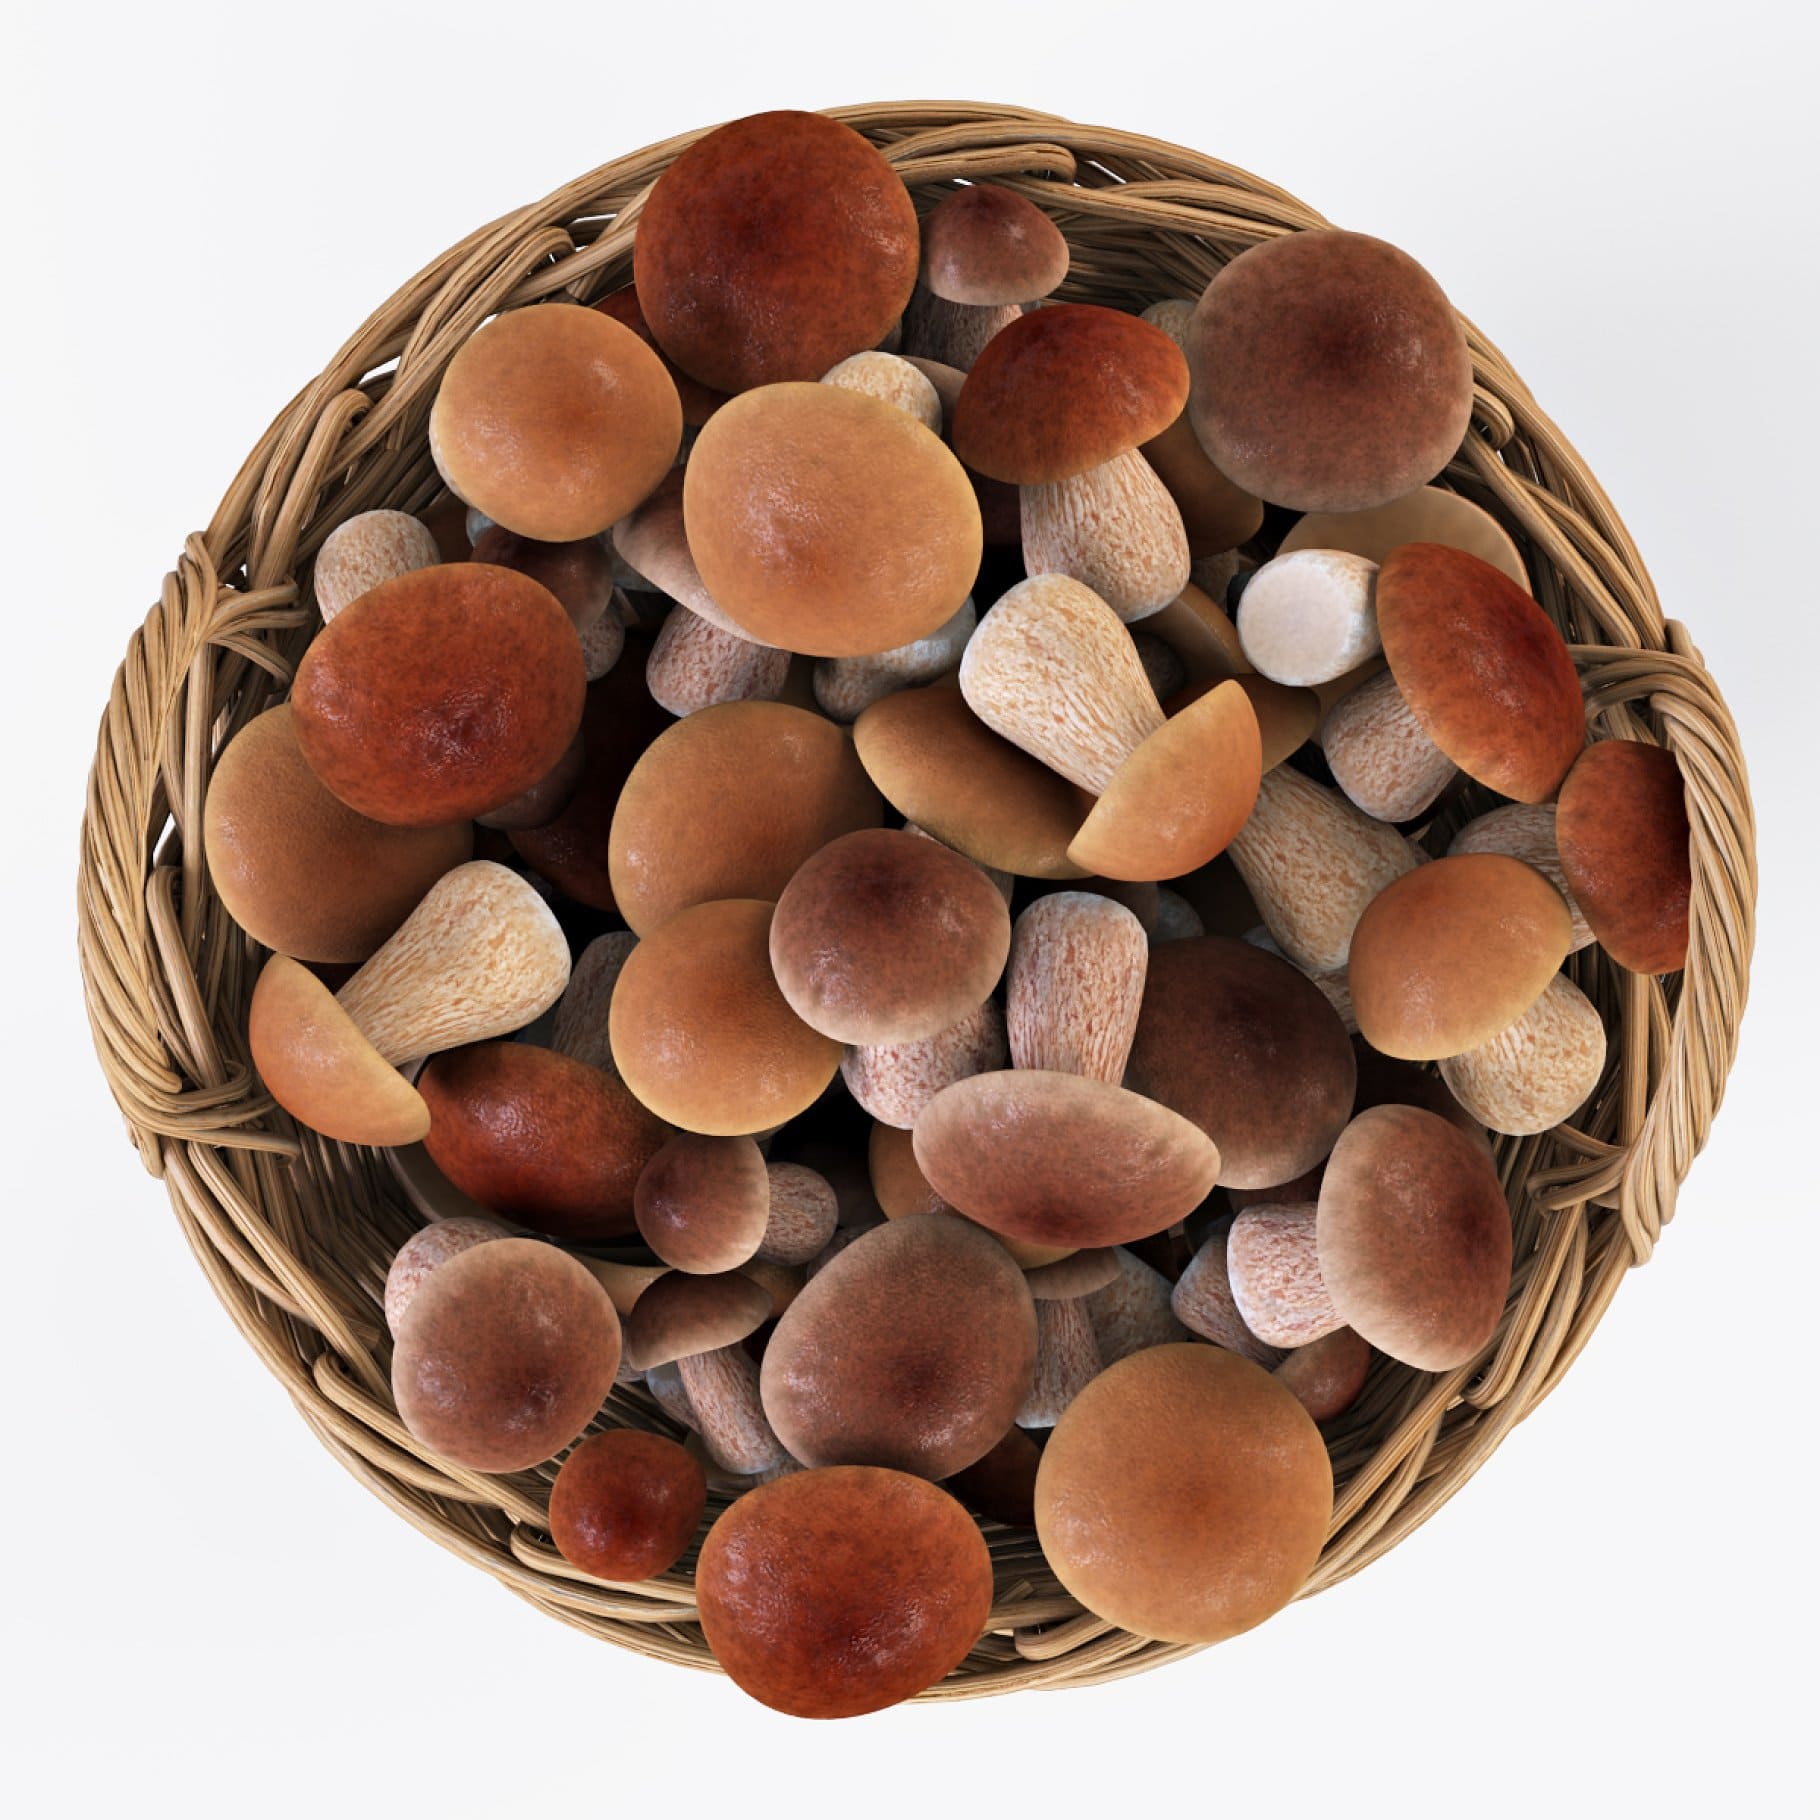 Mushrooms of fabulous beauty in baskets.